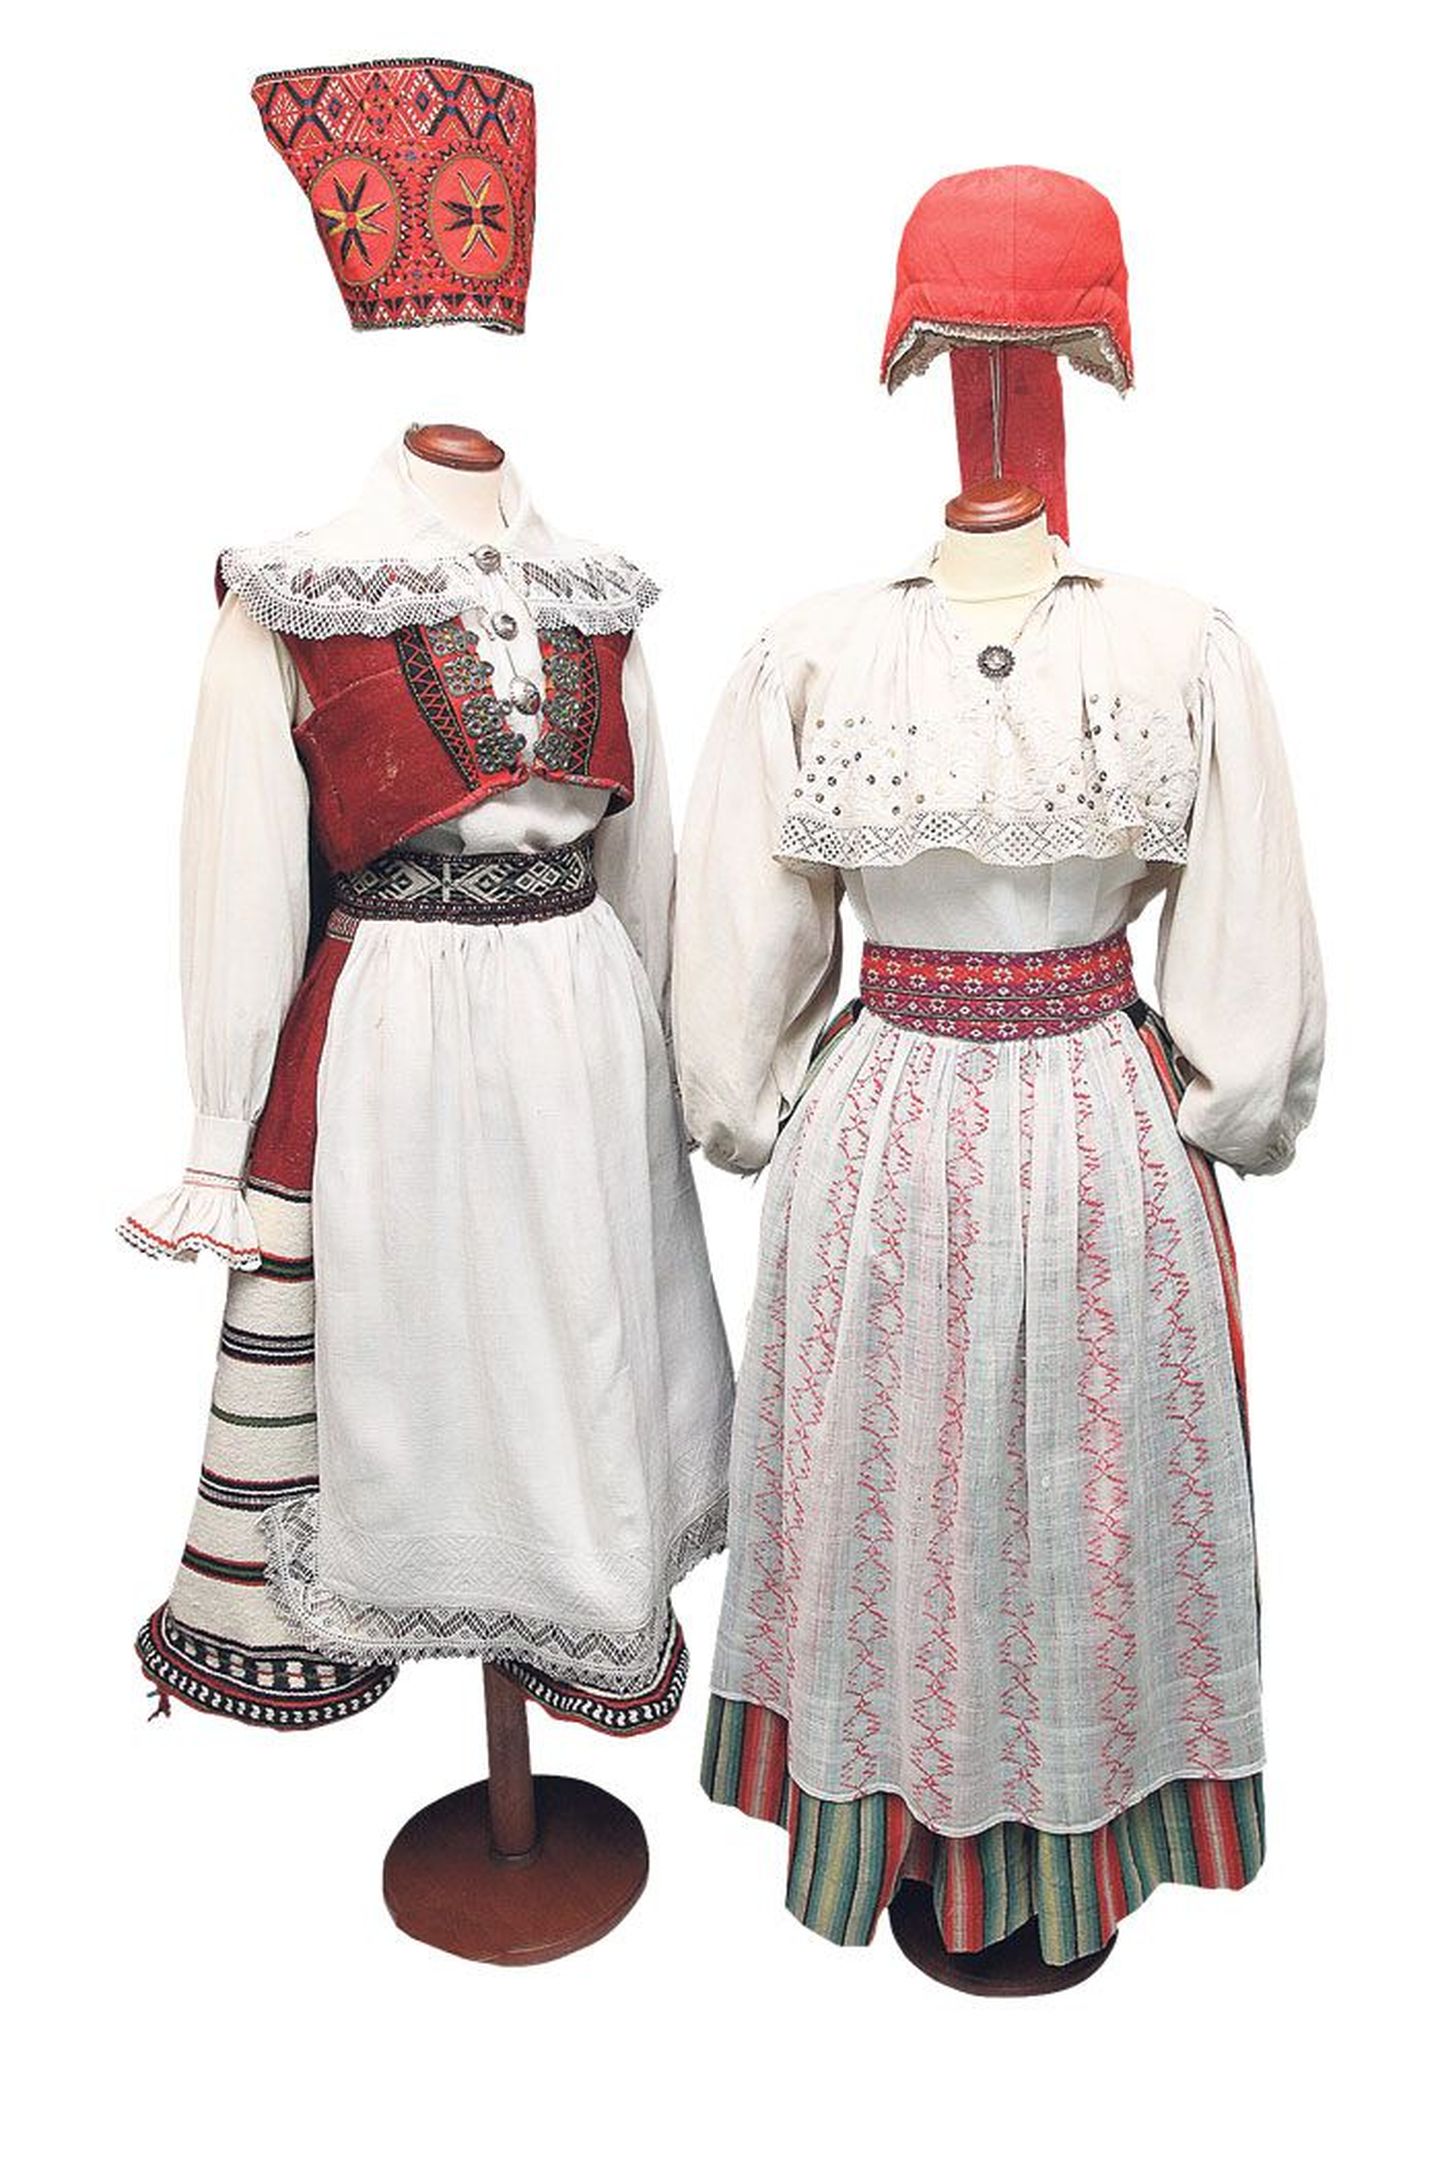 Mustjala naise kostüüm (vasakul) ja Kadrina naise kostüüm, seelik ootamatu triibukombinatsiooniga.